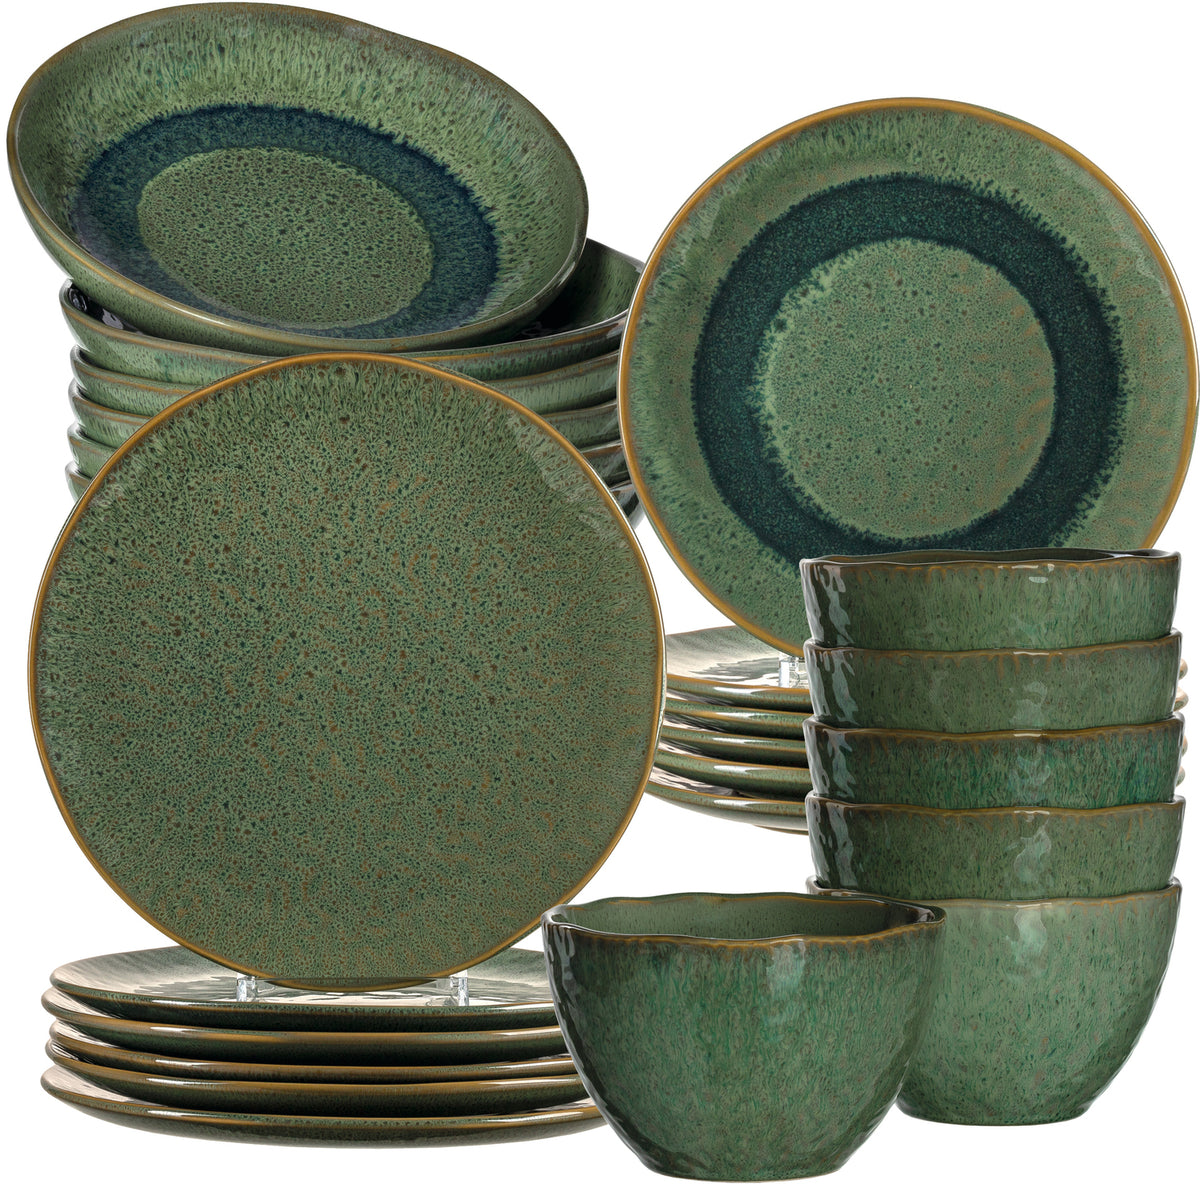 Geschirrset MATERA 24-teilig grün Keramik – Leonardo